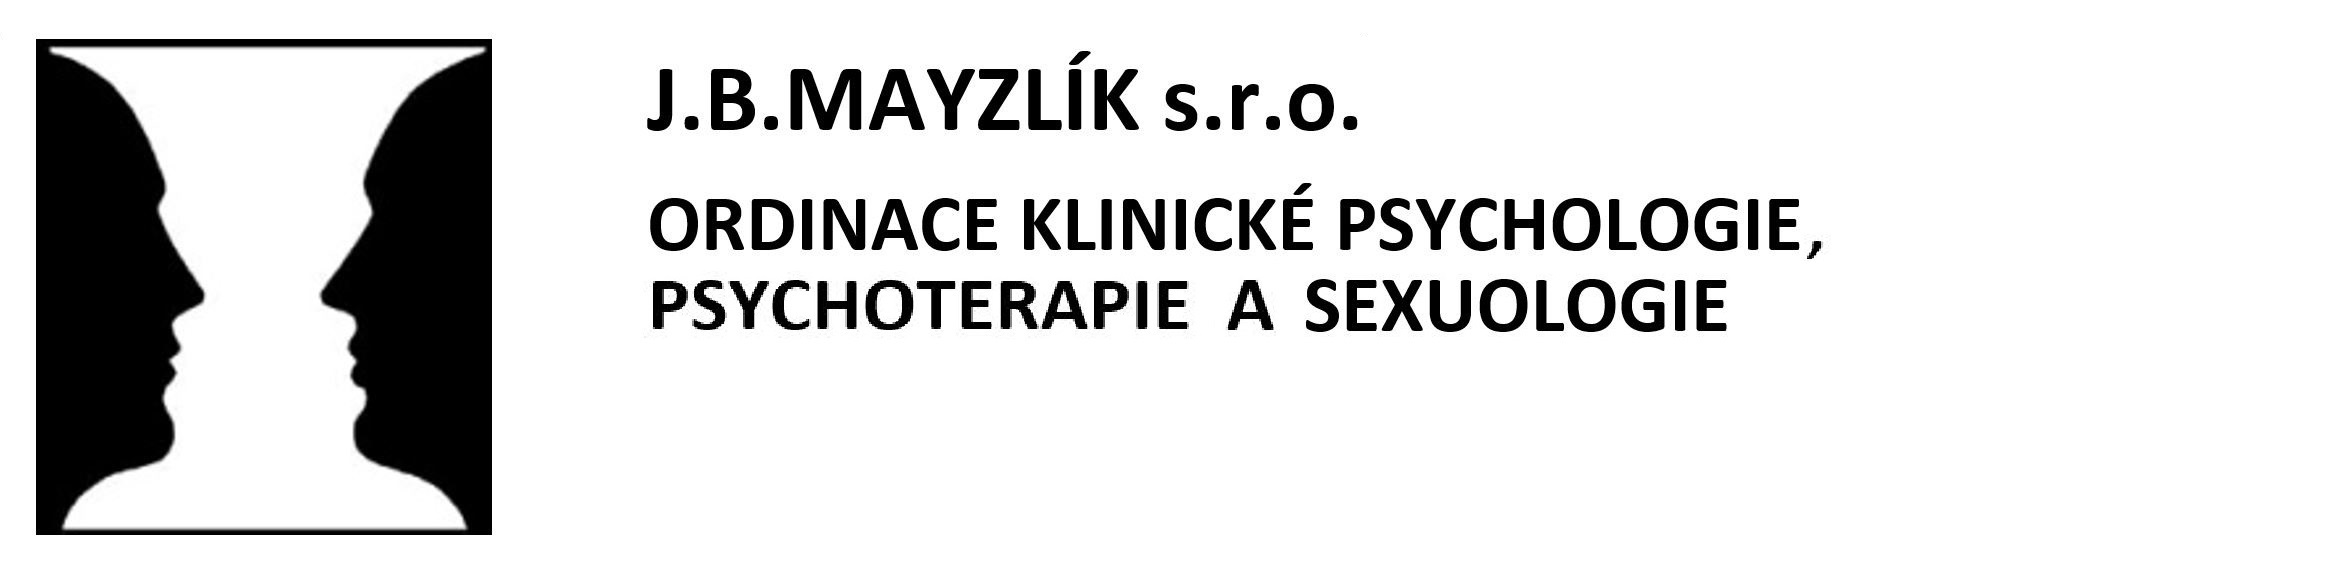 J.B.MAYZLÍK s.r.o.